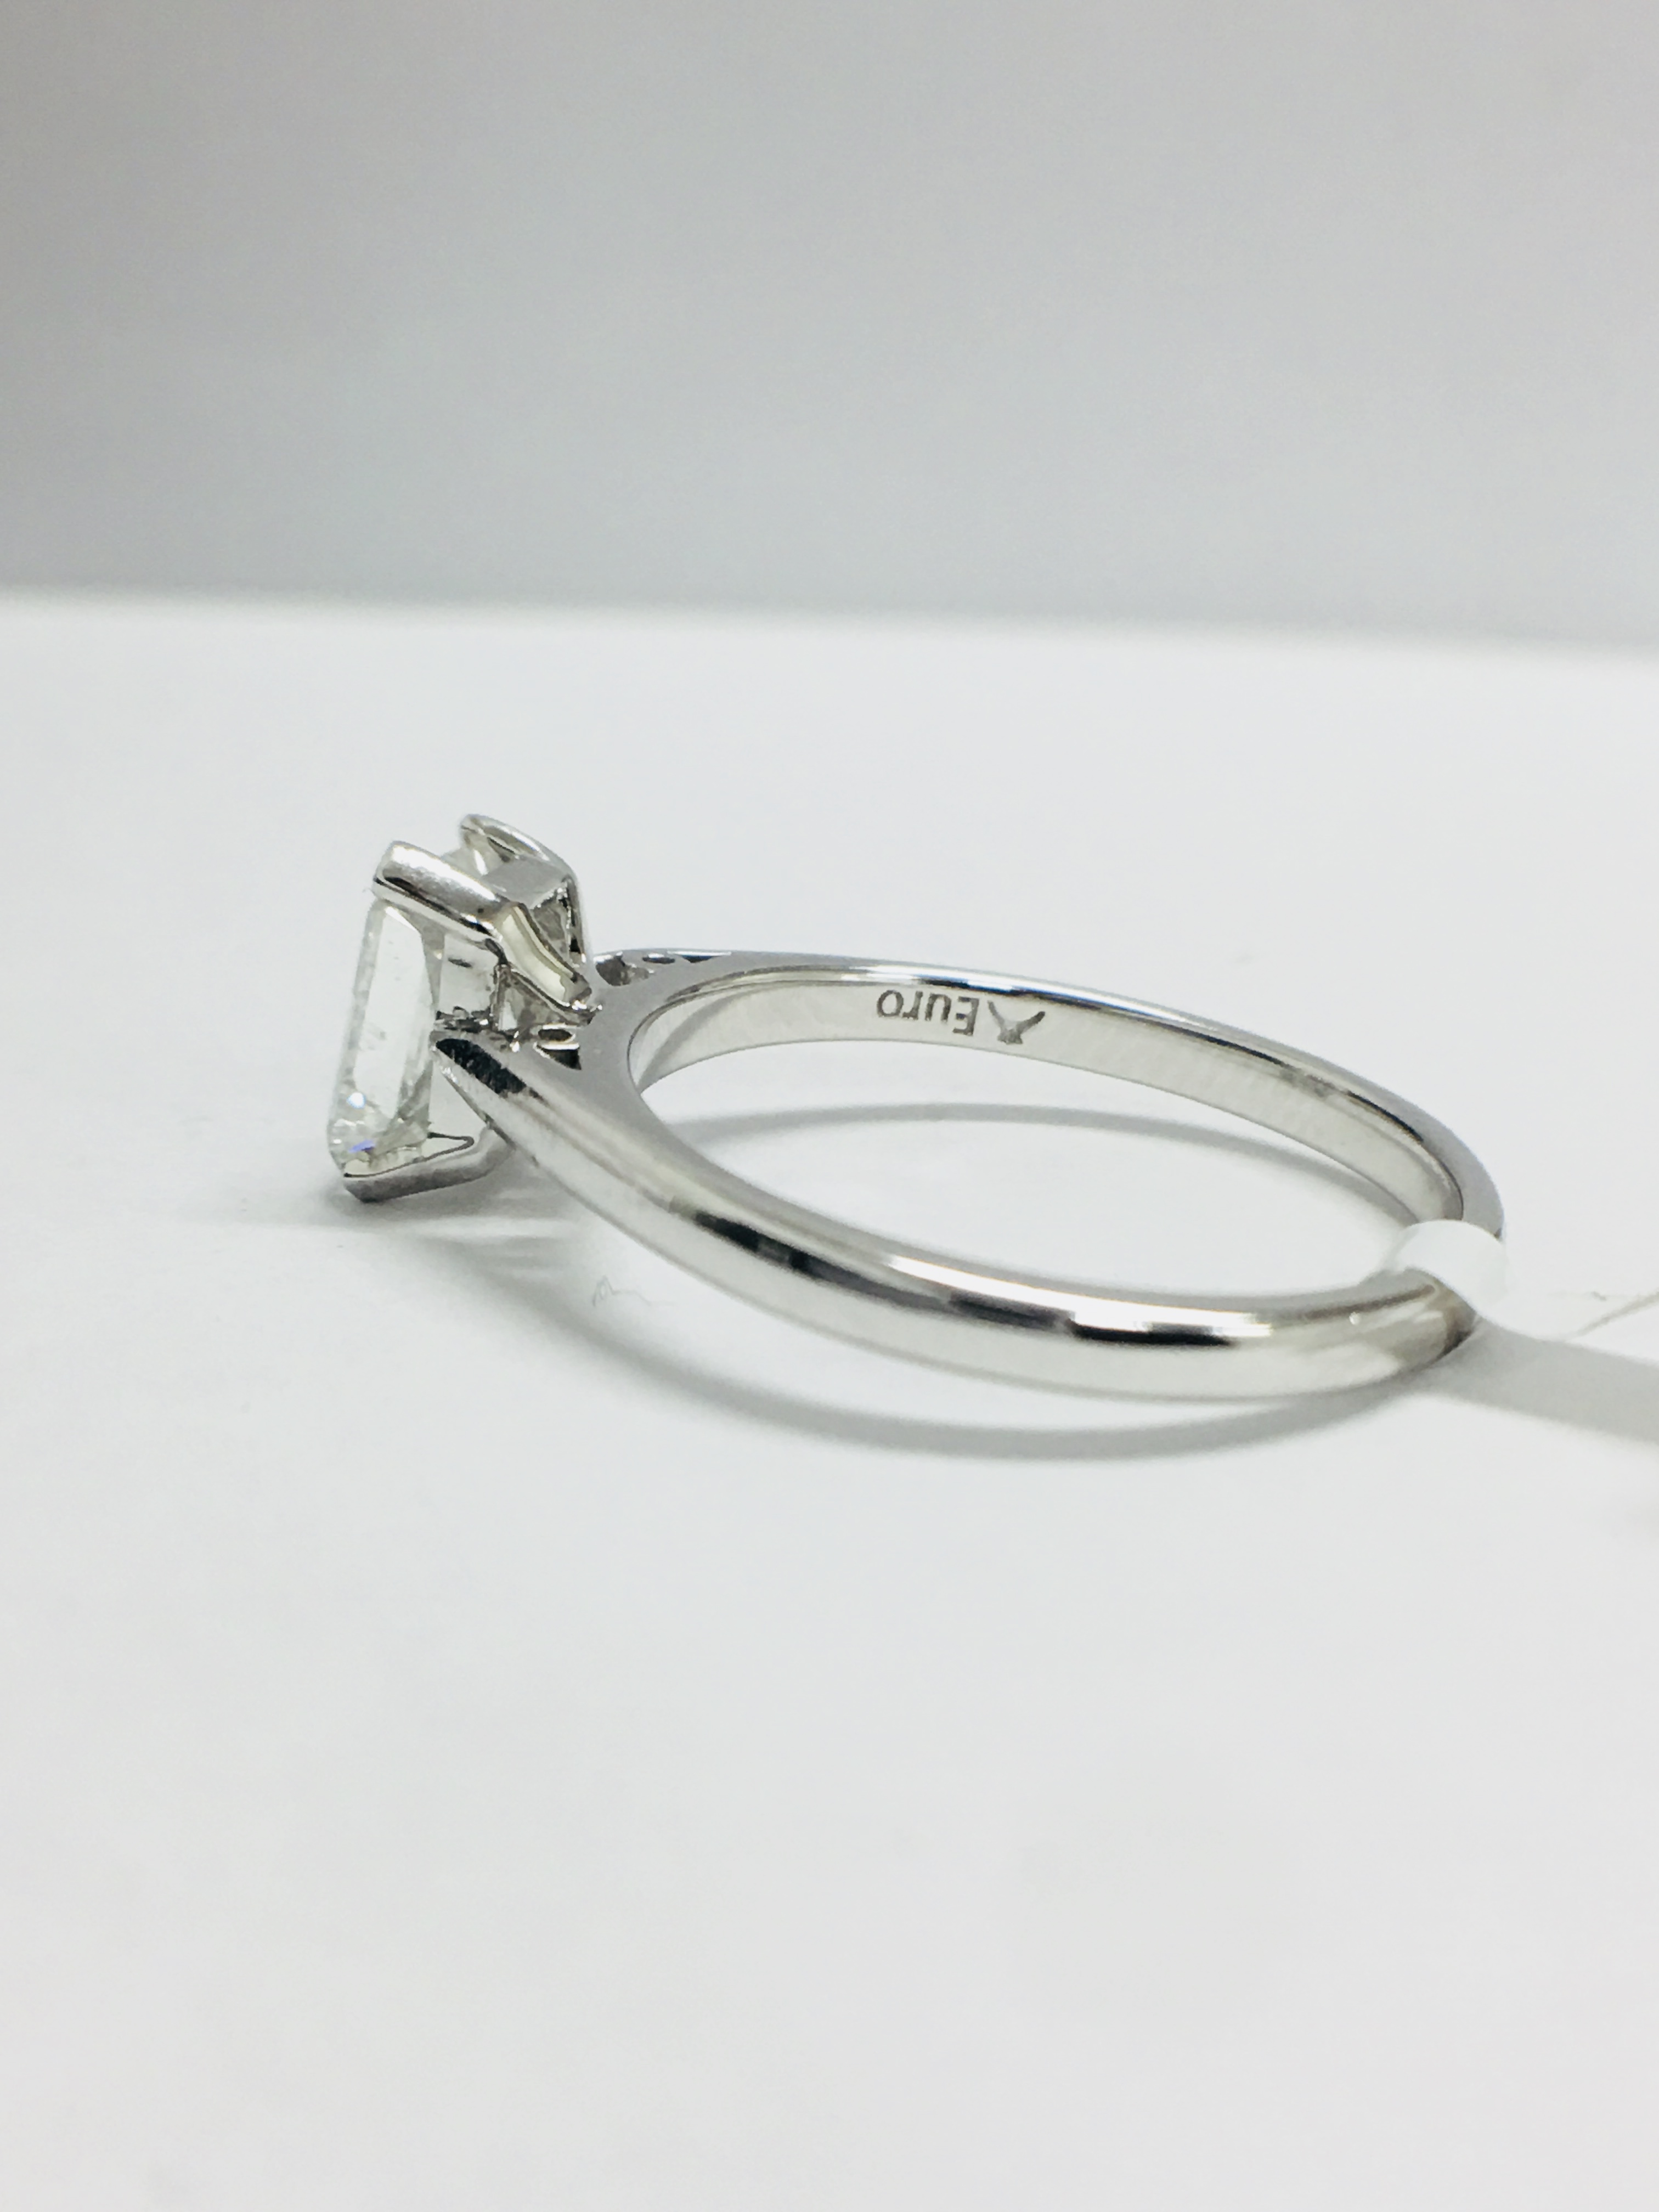 1Ct Radiant Cut Diamond Solitaire Platinum Ring, - Image 5 of 7